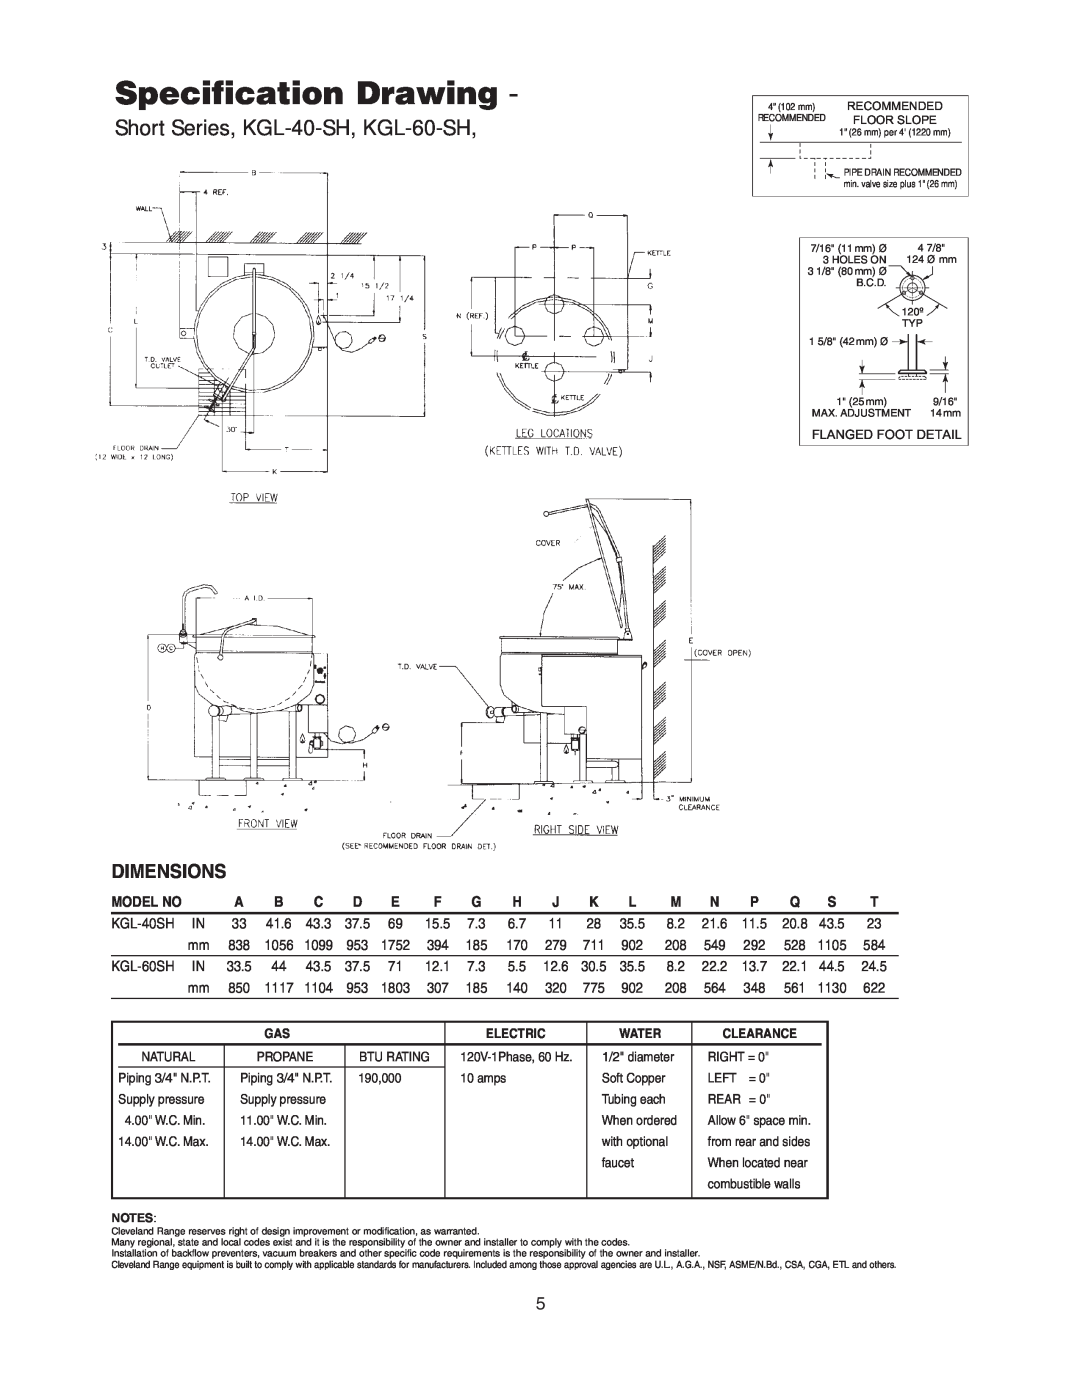 Cleveland Range KGL-80-T, KGL-40-SH manual Specification Drawing, Dimensions, Model No, KGL-40SH, 21.6, KGL-60SH, 22.2 